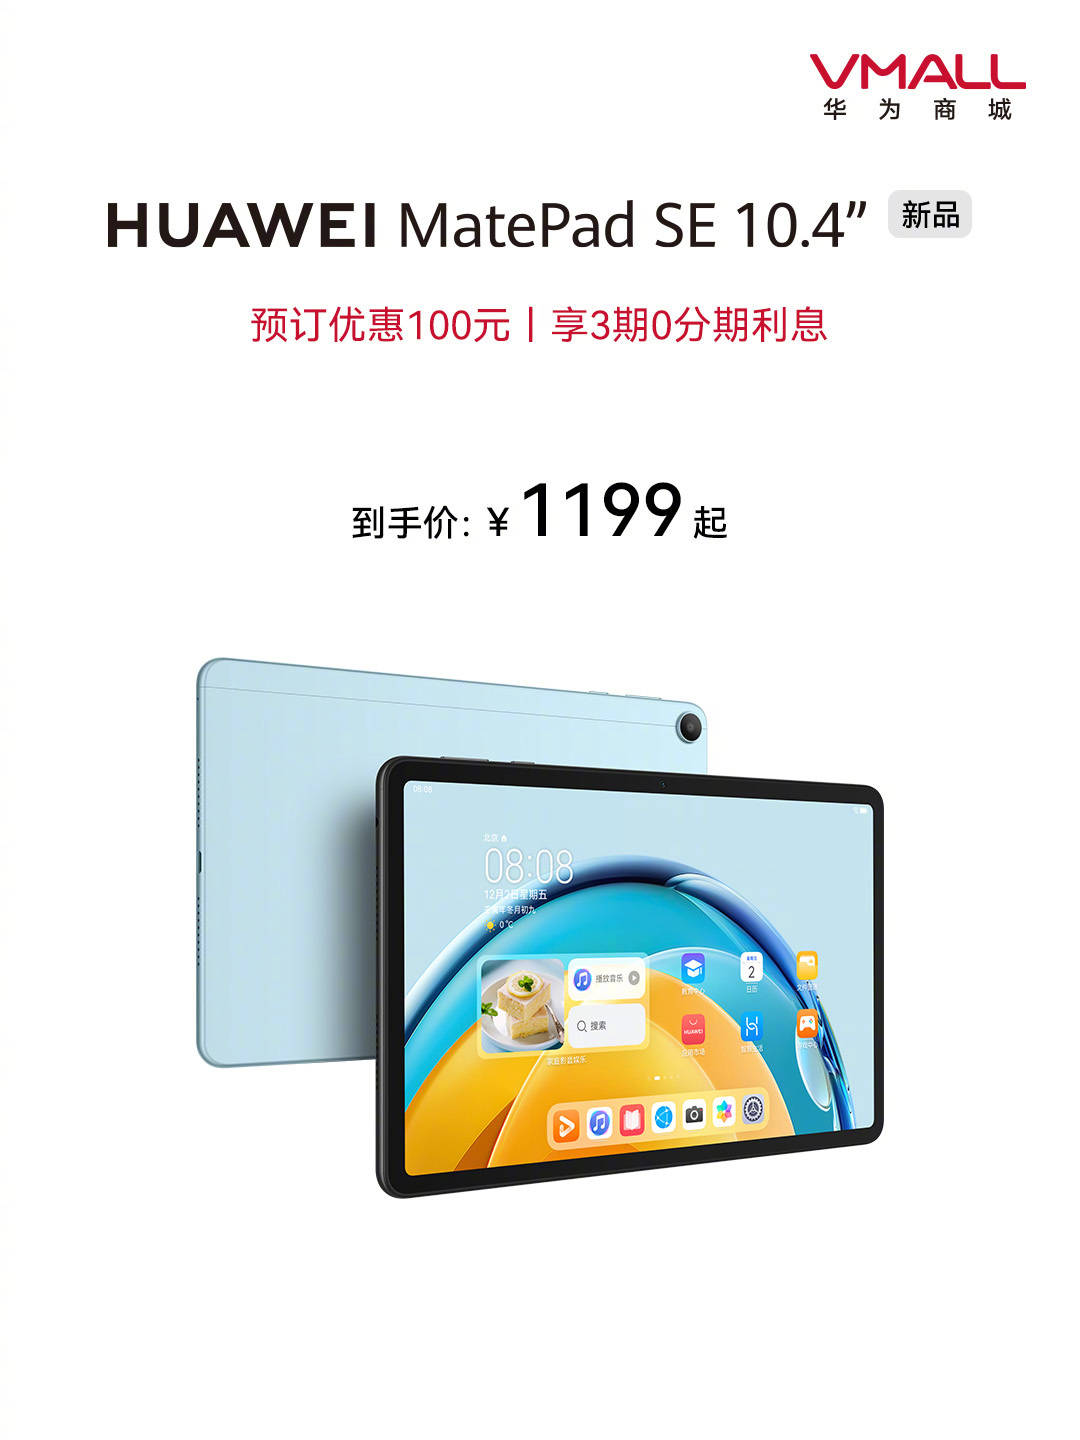 华为平板手机8英寸
:华为推出全新 MatePad SE 10.4 英寸平板电脑，4+128GB 版本首销 1199 元起